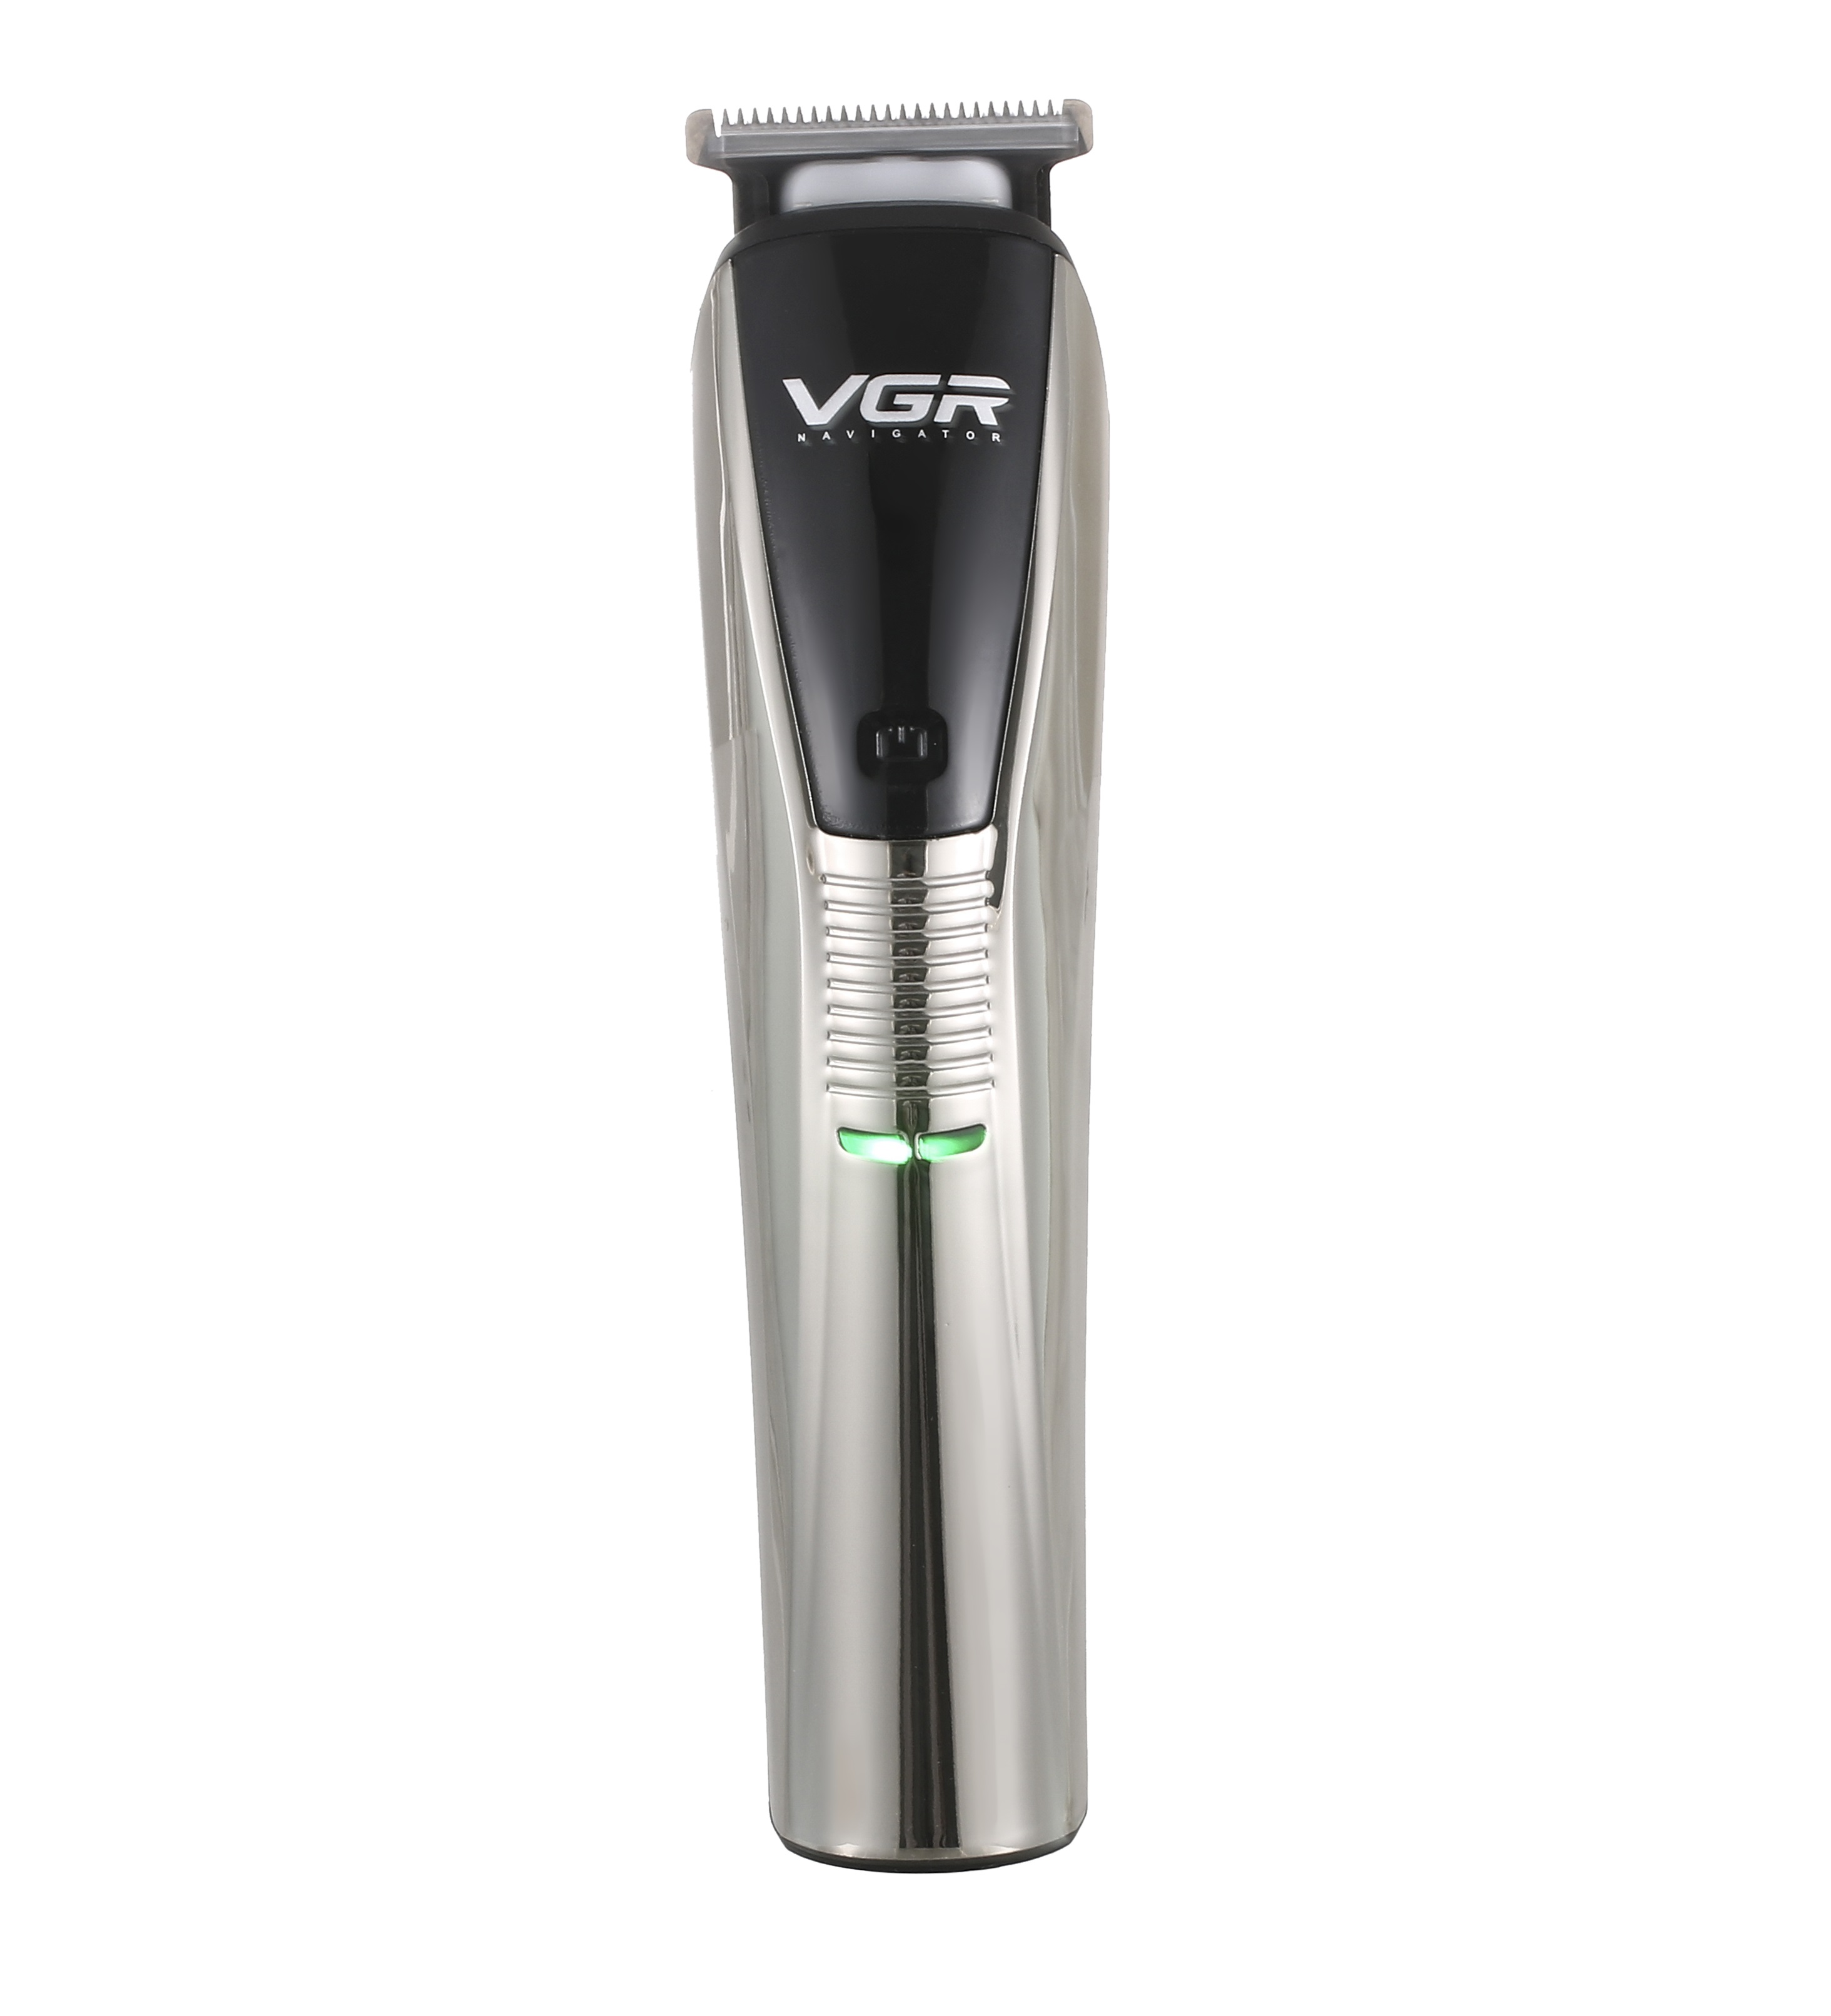 Машинка для стрижки волос VGR Professional V-029 черный набор подарочный для мужчин svoboda natural свежесть гор шампунь бальзам 2в1 для влос гель для душа